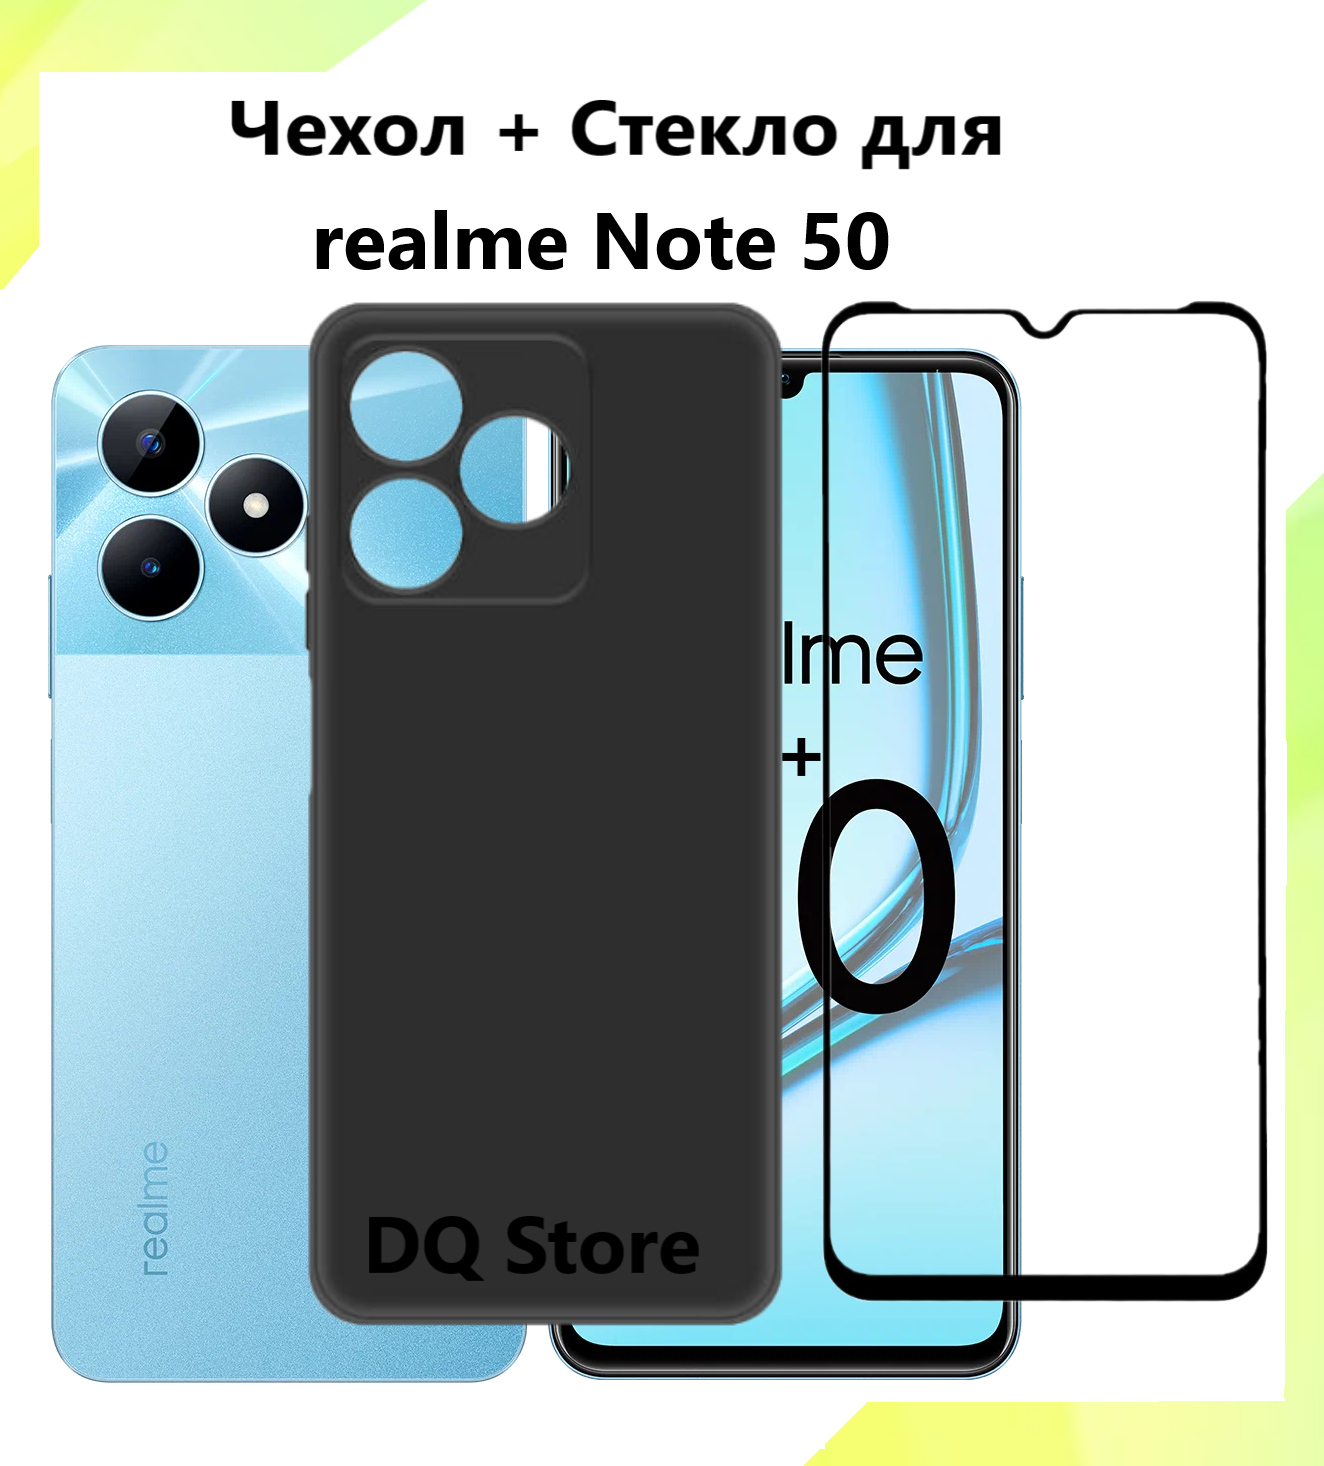 Силиконовый чехол для Realme Note 50 / Реалми Ноте 50. Черный матовый бампер с защитой камеры